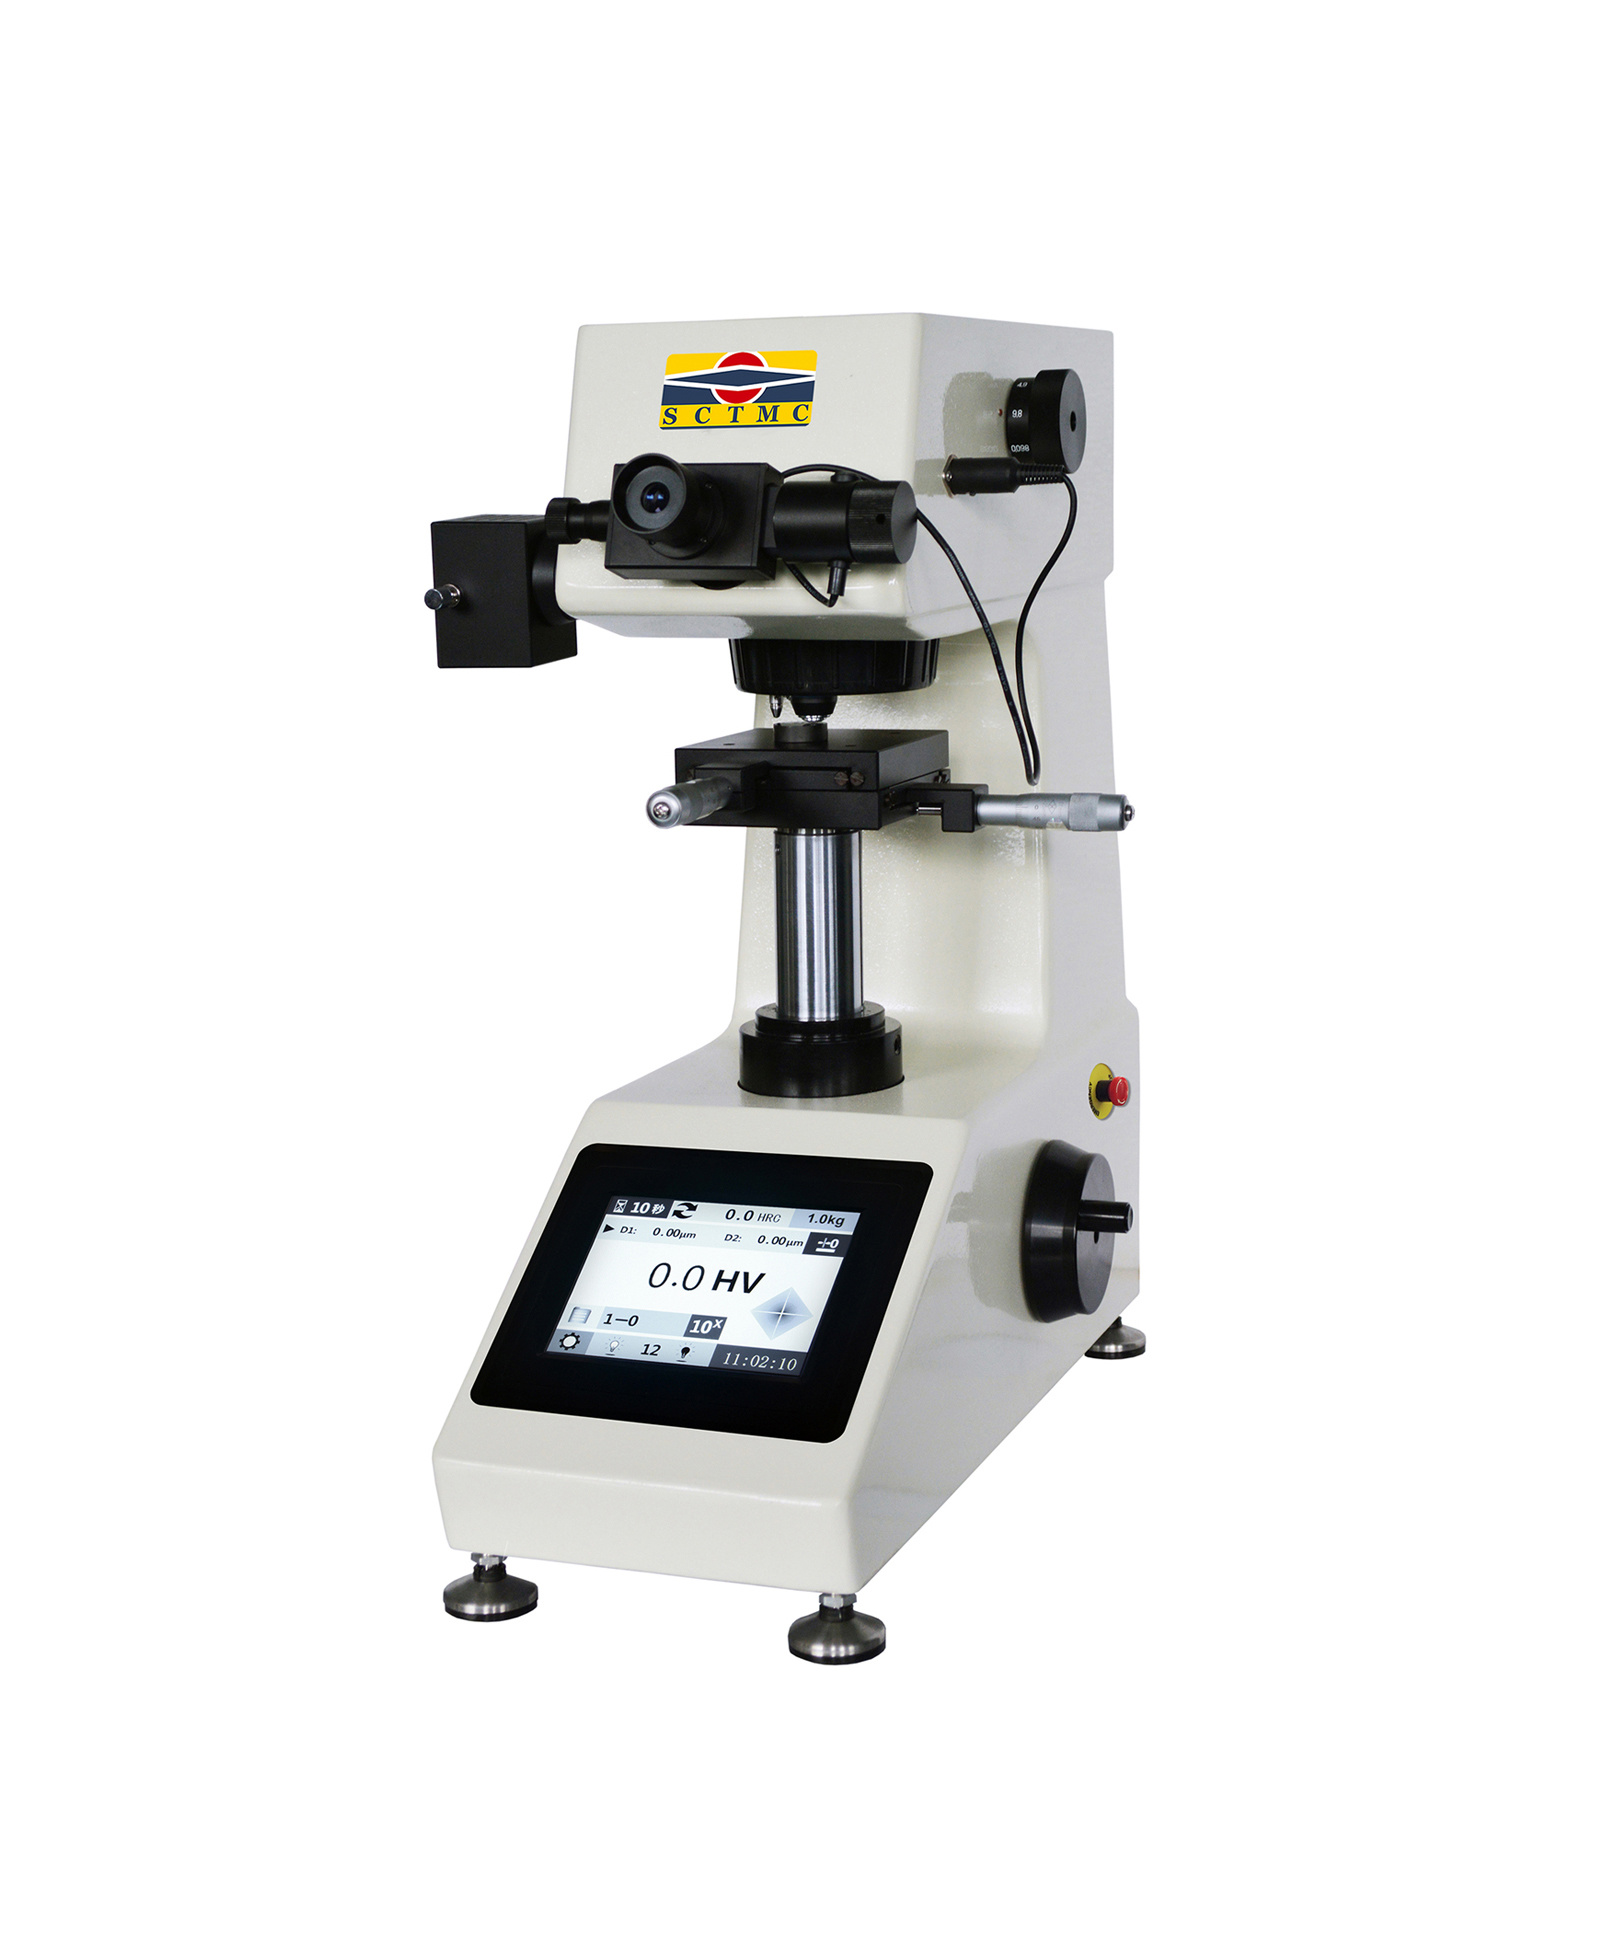  MHV-1000Z Digital Micro Vickers Hardness Tester